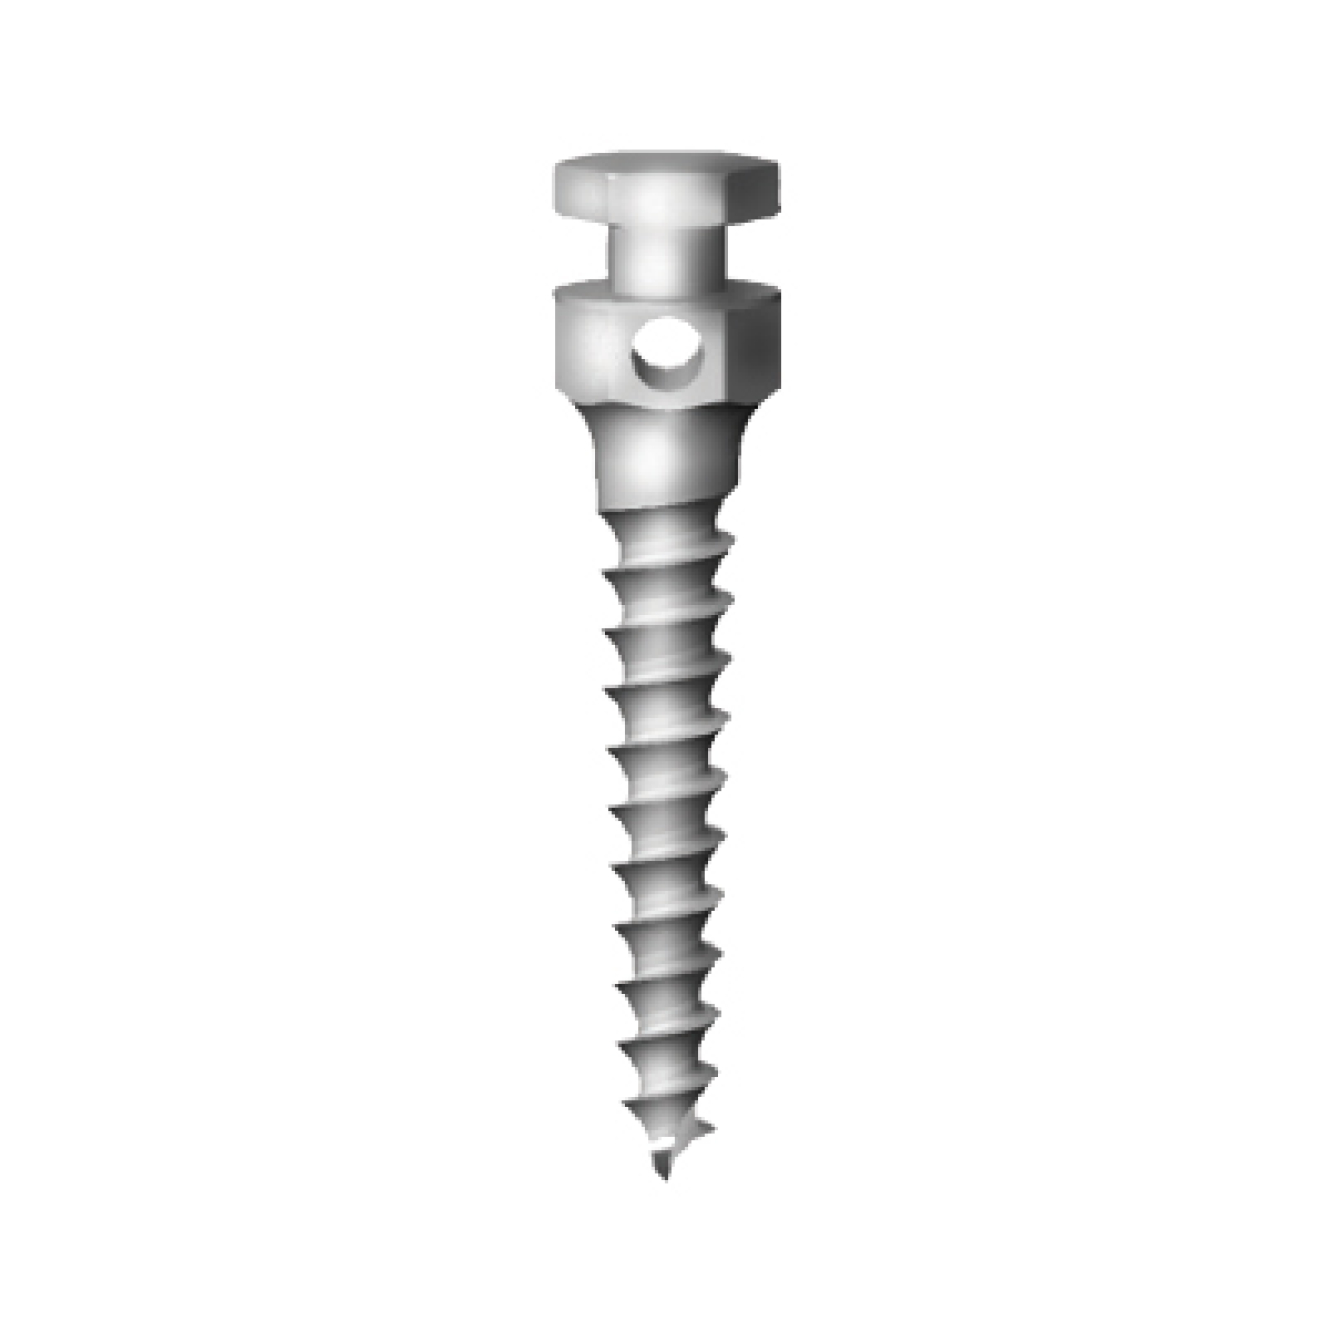 OS-L-16-010 Стоматологический ортодонтический винт для эластичной тяги и проволоки, диаметр 1.6 мм, длина 10 мм, Mr.Curette Tech, Южная Корея